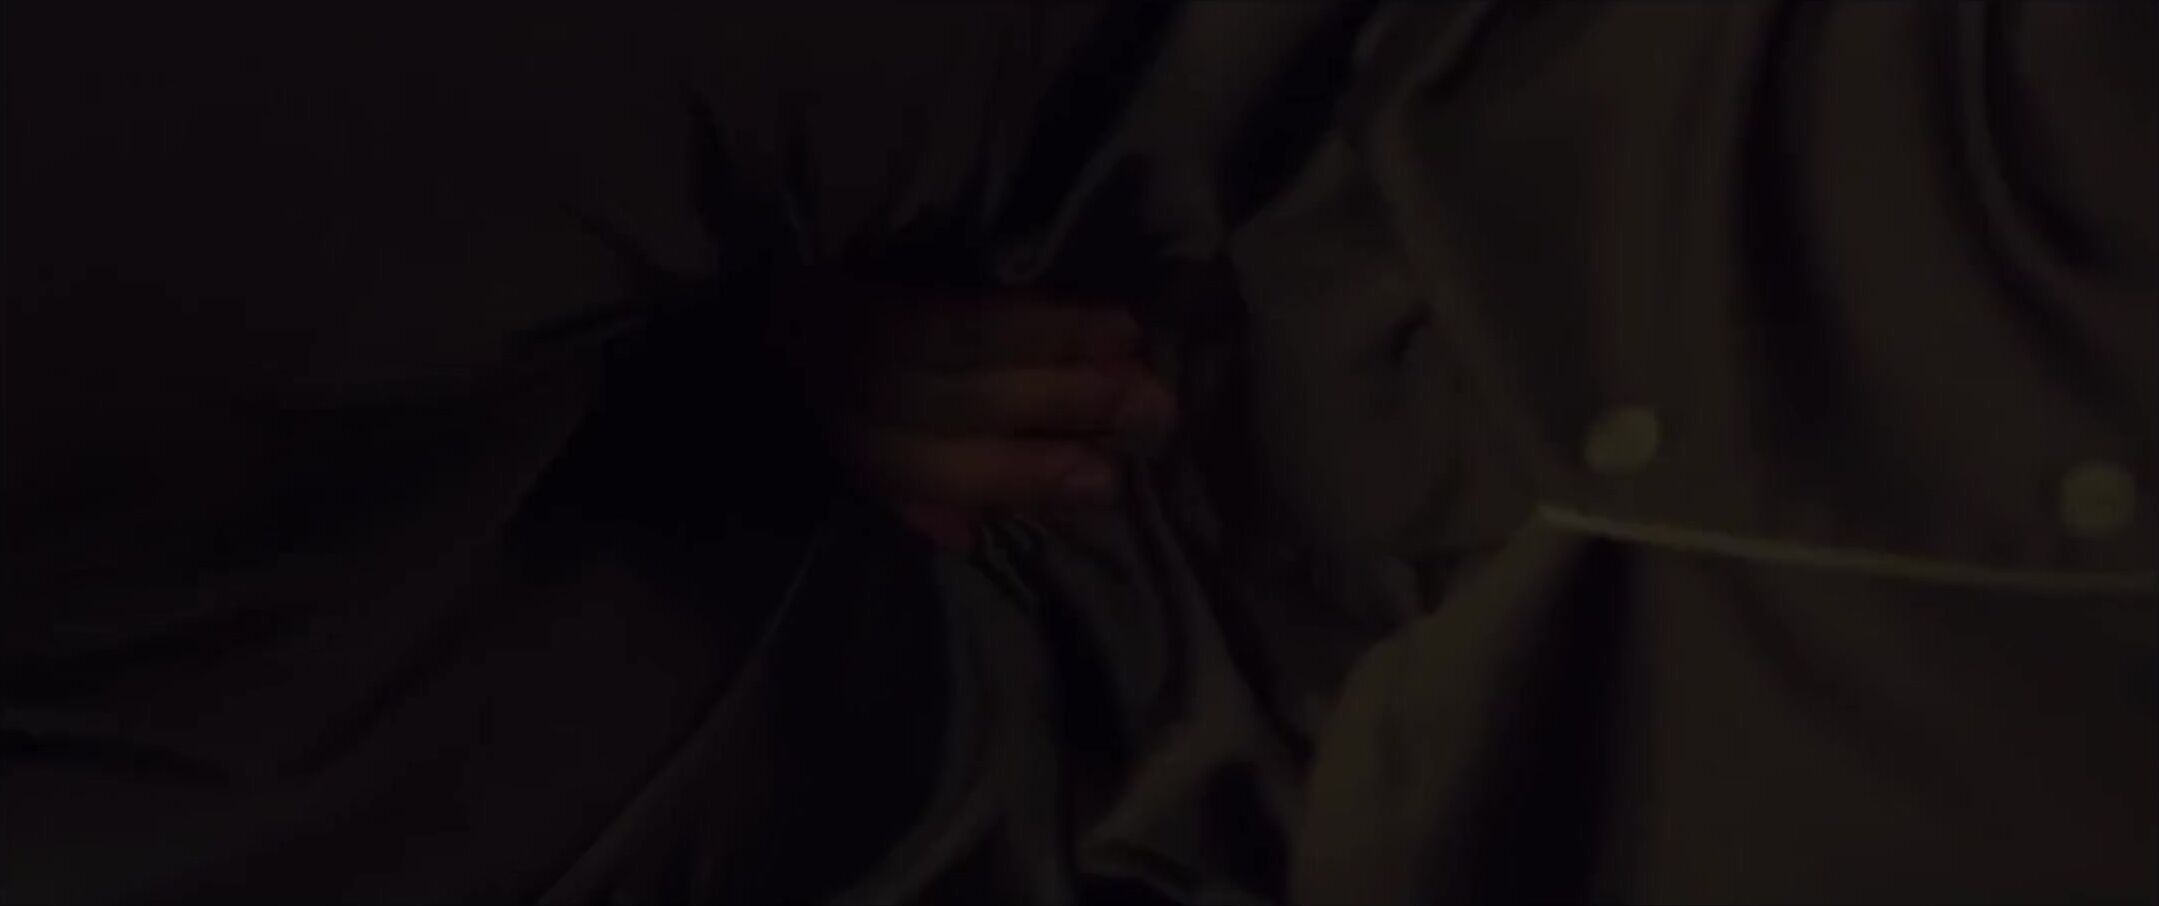 Hentai3D Korean movie Parasite mutual masturbation explicit moment with Jo Yeo-jeong Jesse Jane